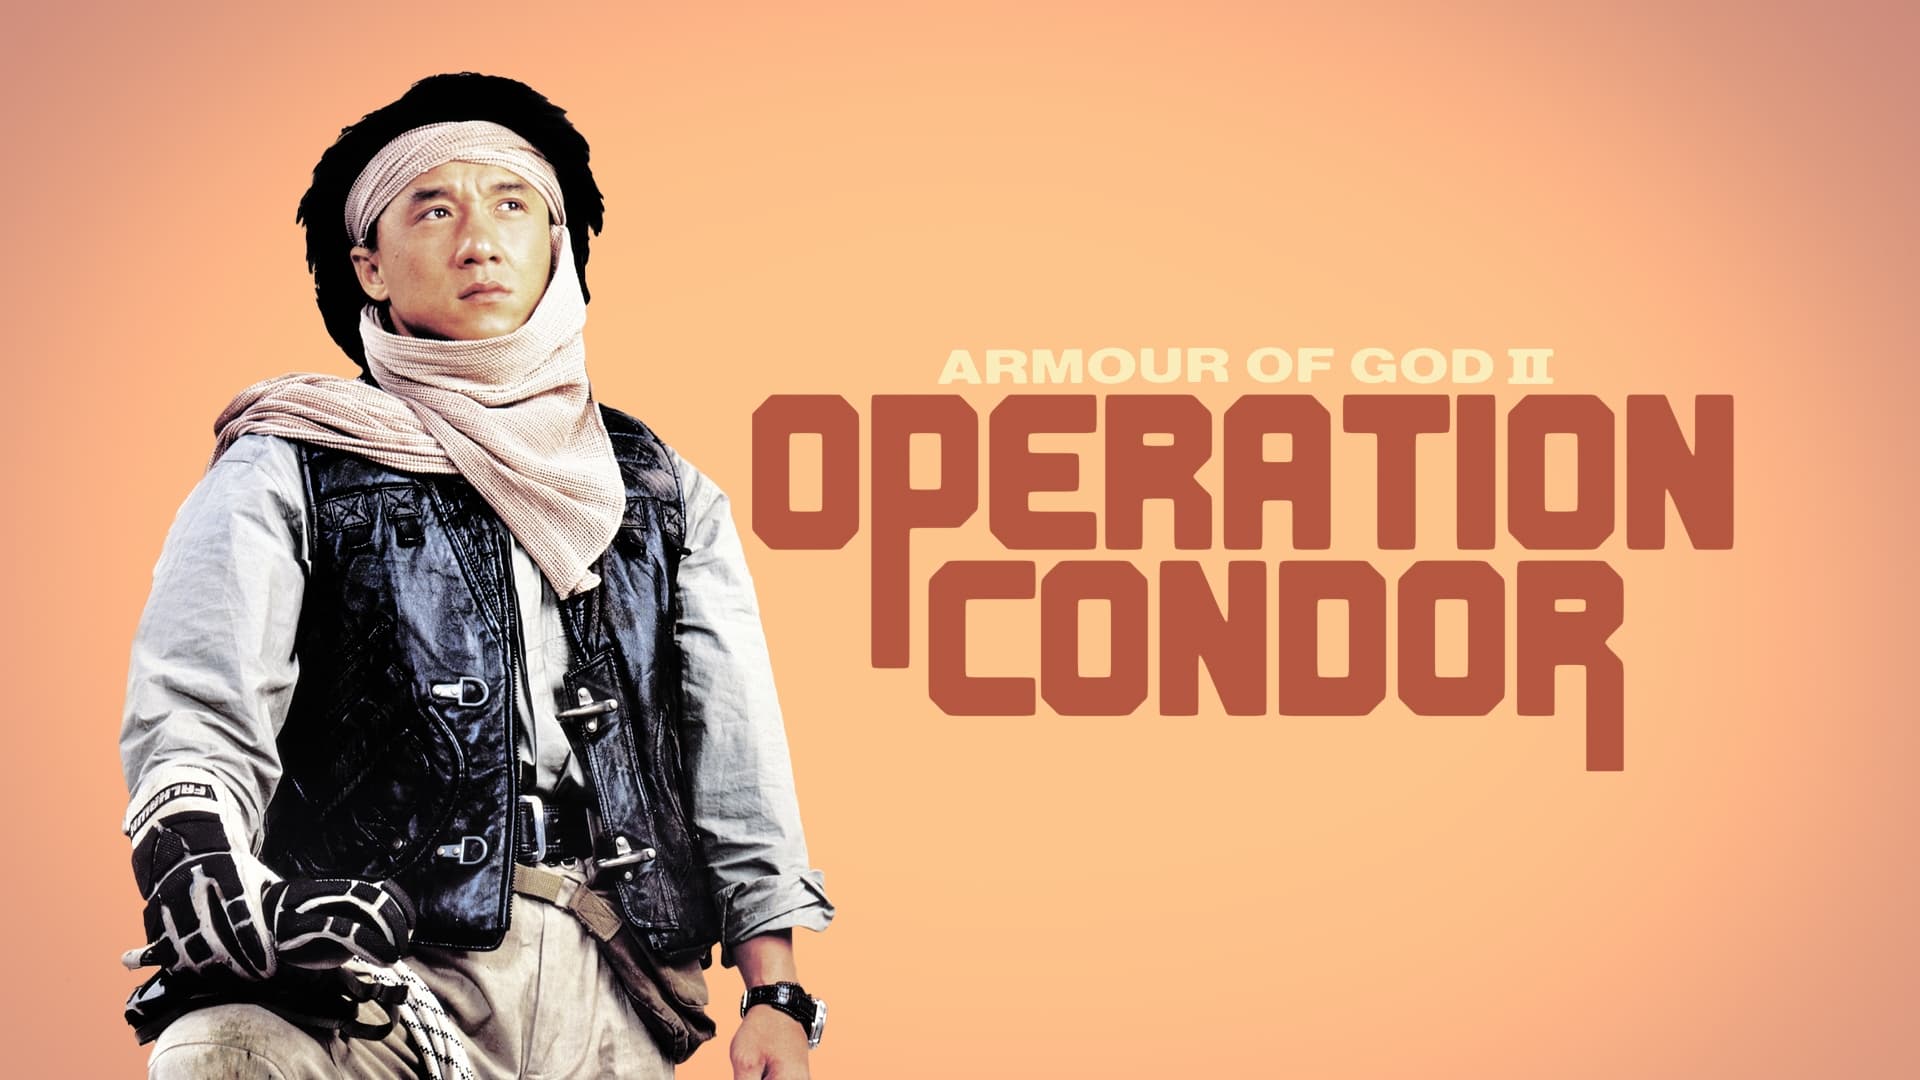 Opération Condor